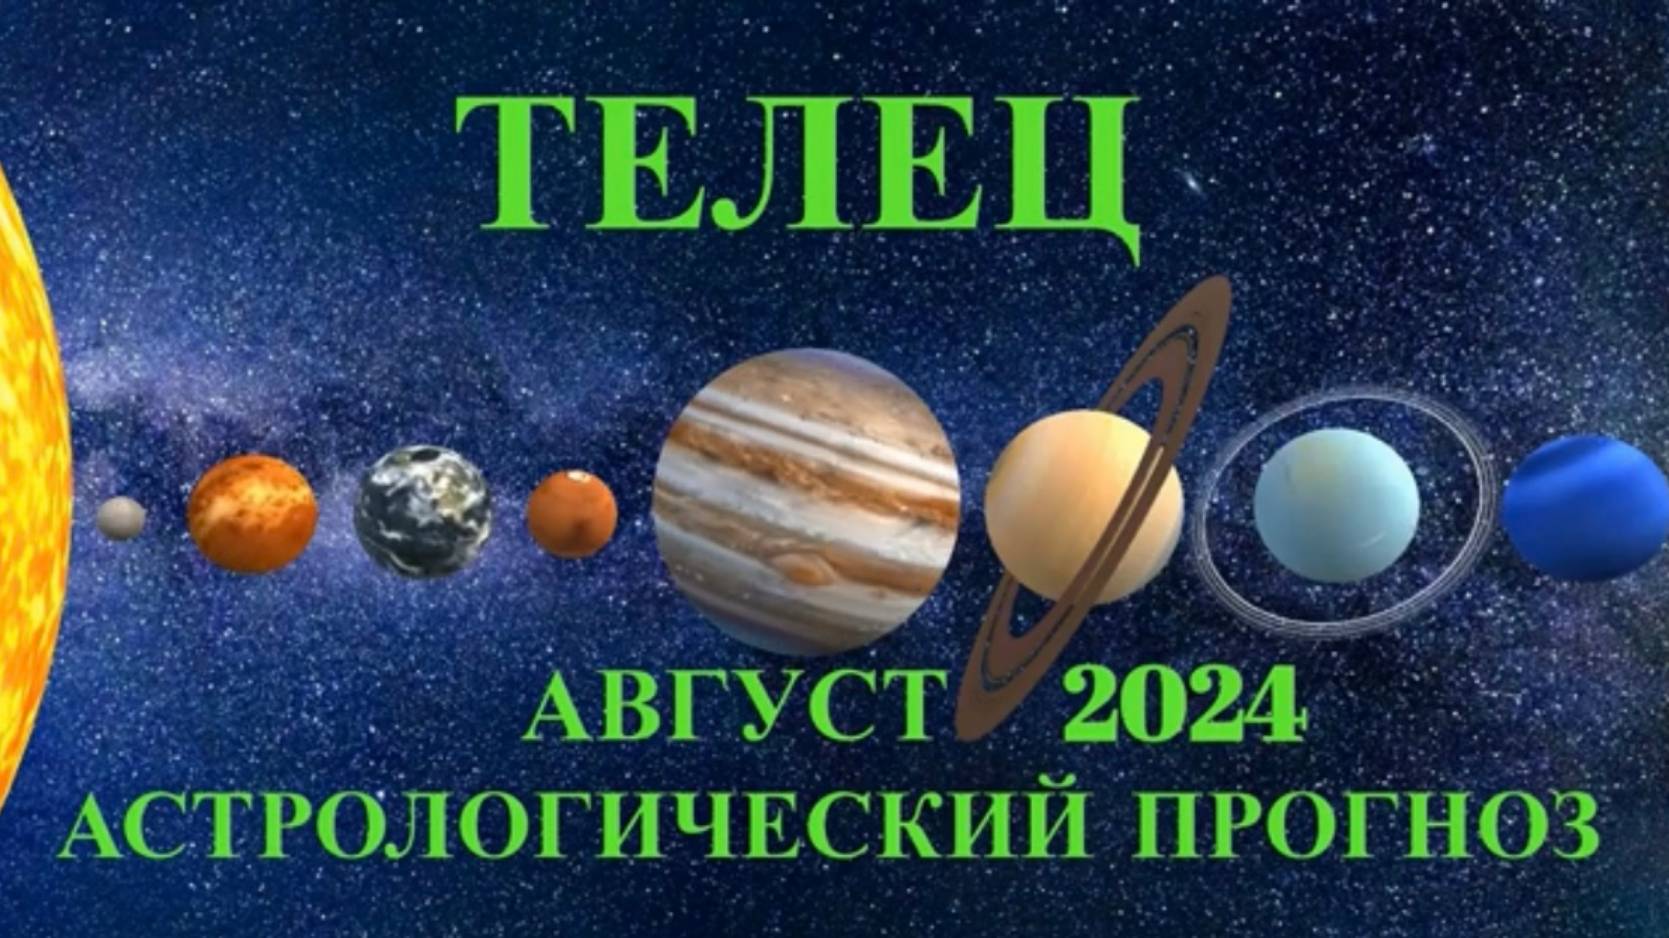 ТЕЛЕЦ: "АСТРОЛОГИЧЕСКИЙ ПРОГНОЗ на АВГУСТ-2024!!!"